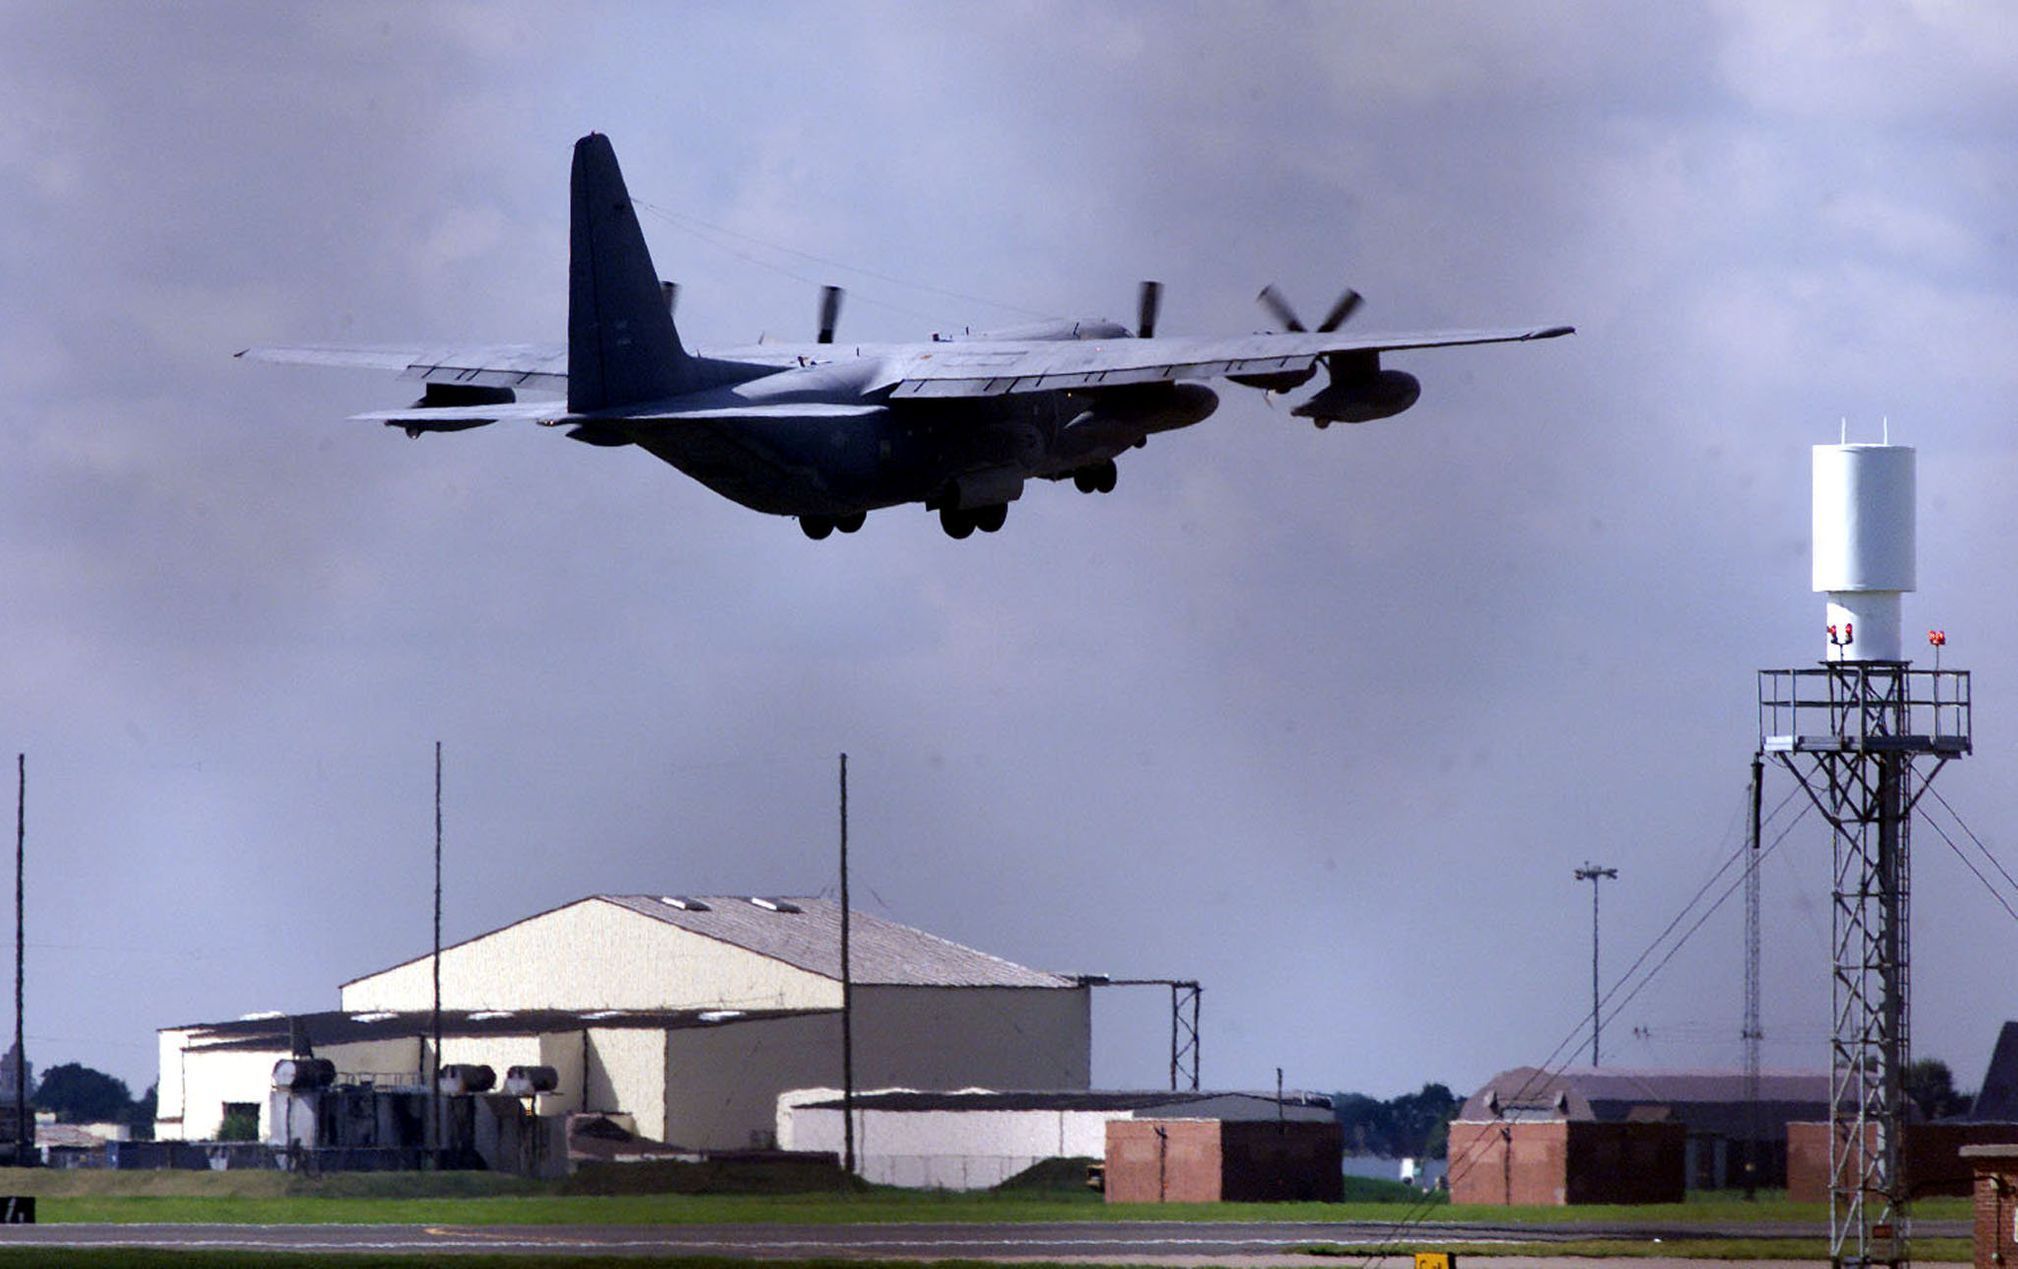 Letecká základna Mildenhall v Británii využívaná vzdušnými silami Spojených států.